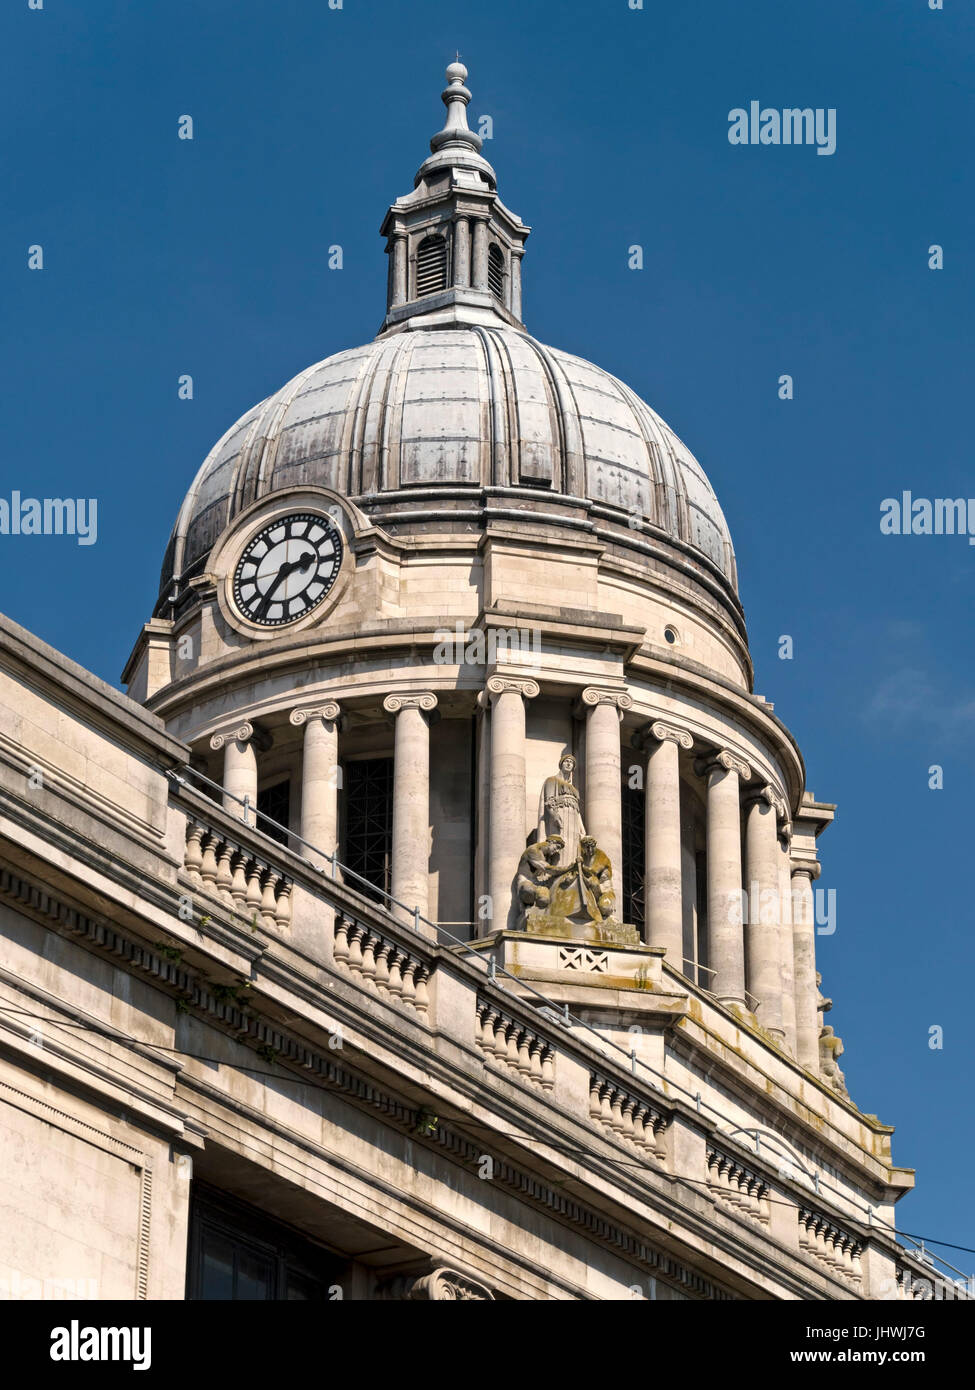 Ornato di piombo del tetto a cupola con colonne ioniche e cupola sul tetto del Consiglio di Nottingham House Building, Nottingham, Inghilterra, Regno Unito Foto Stock